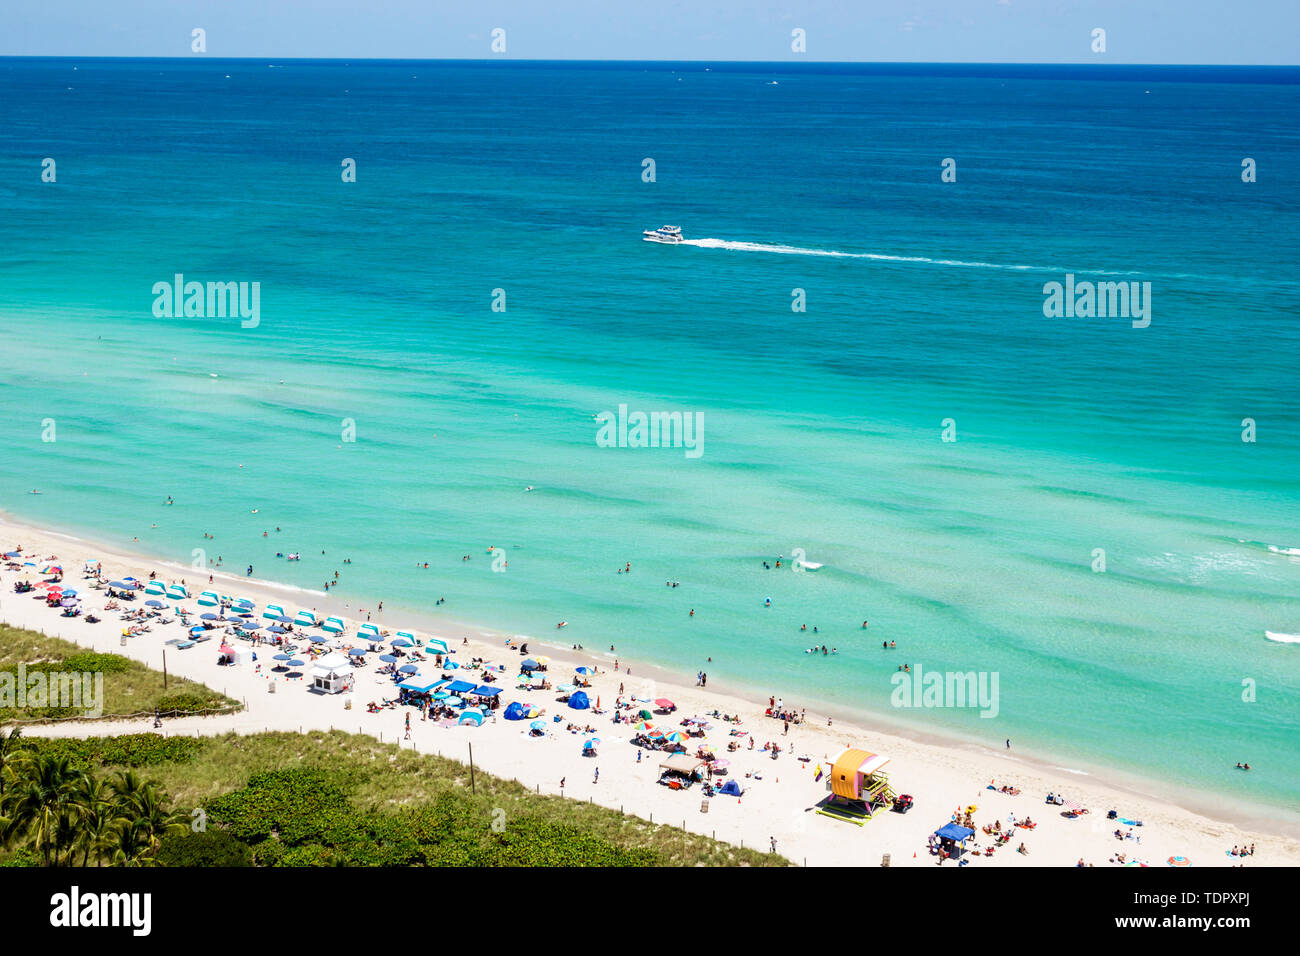 Miami Beach Florida,North Beach,Oceano Atlantico,solarium,spiaggia pubblica,sabbia,ombrelloni,orizzonte,vista dall'alto,acqua blu limpida,spiaggia di sabbia,dune,barca,FL19 Foto Stock